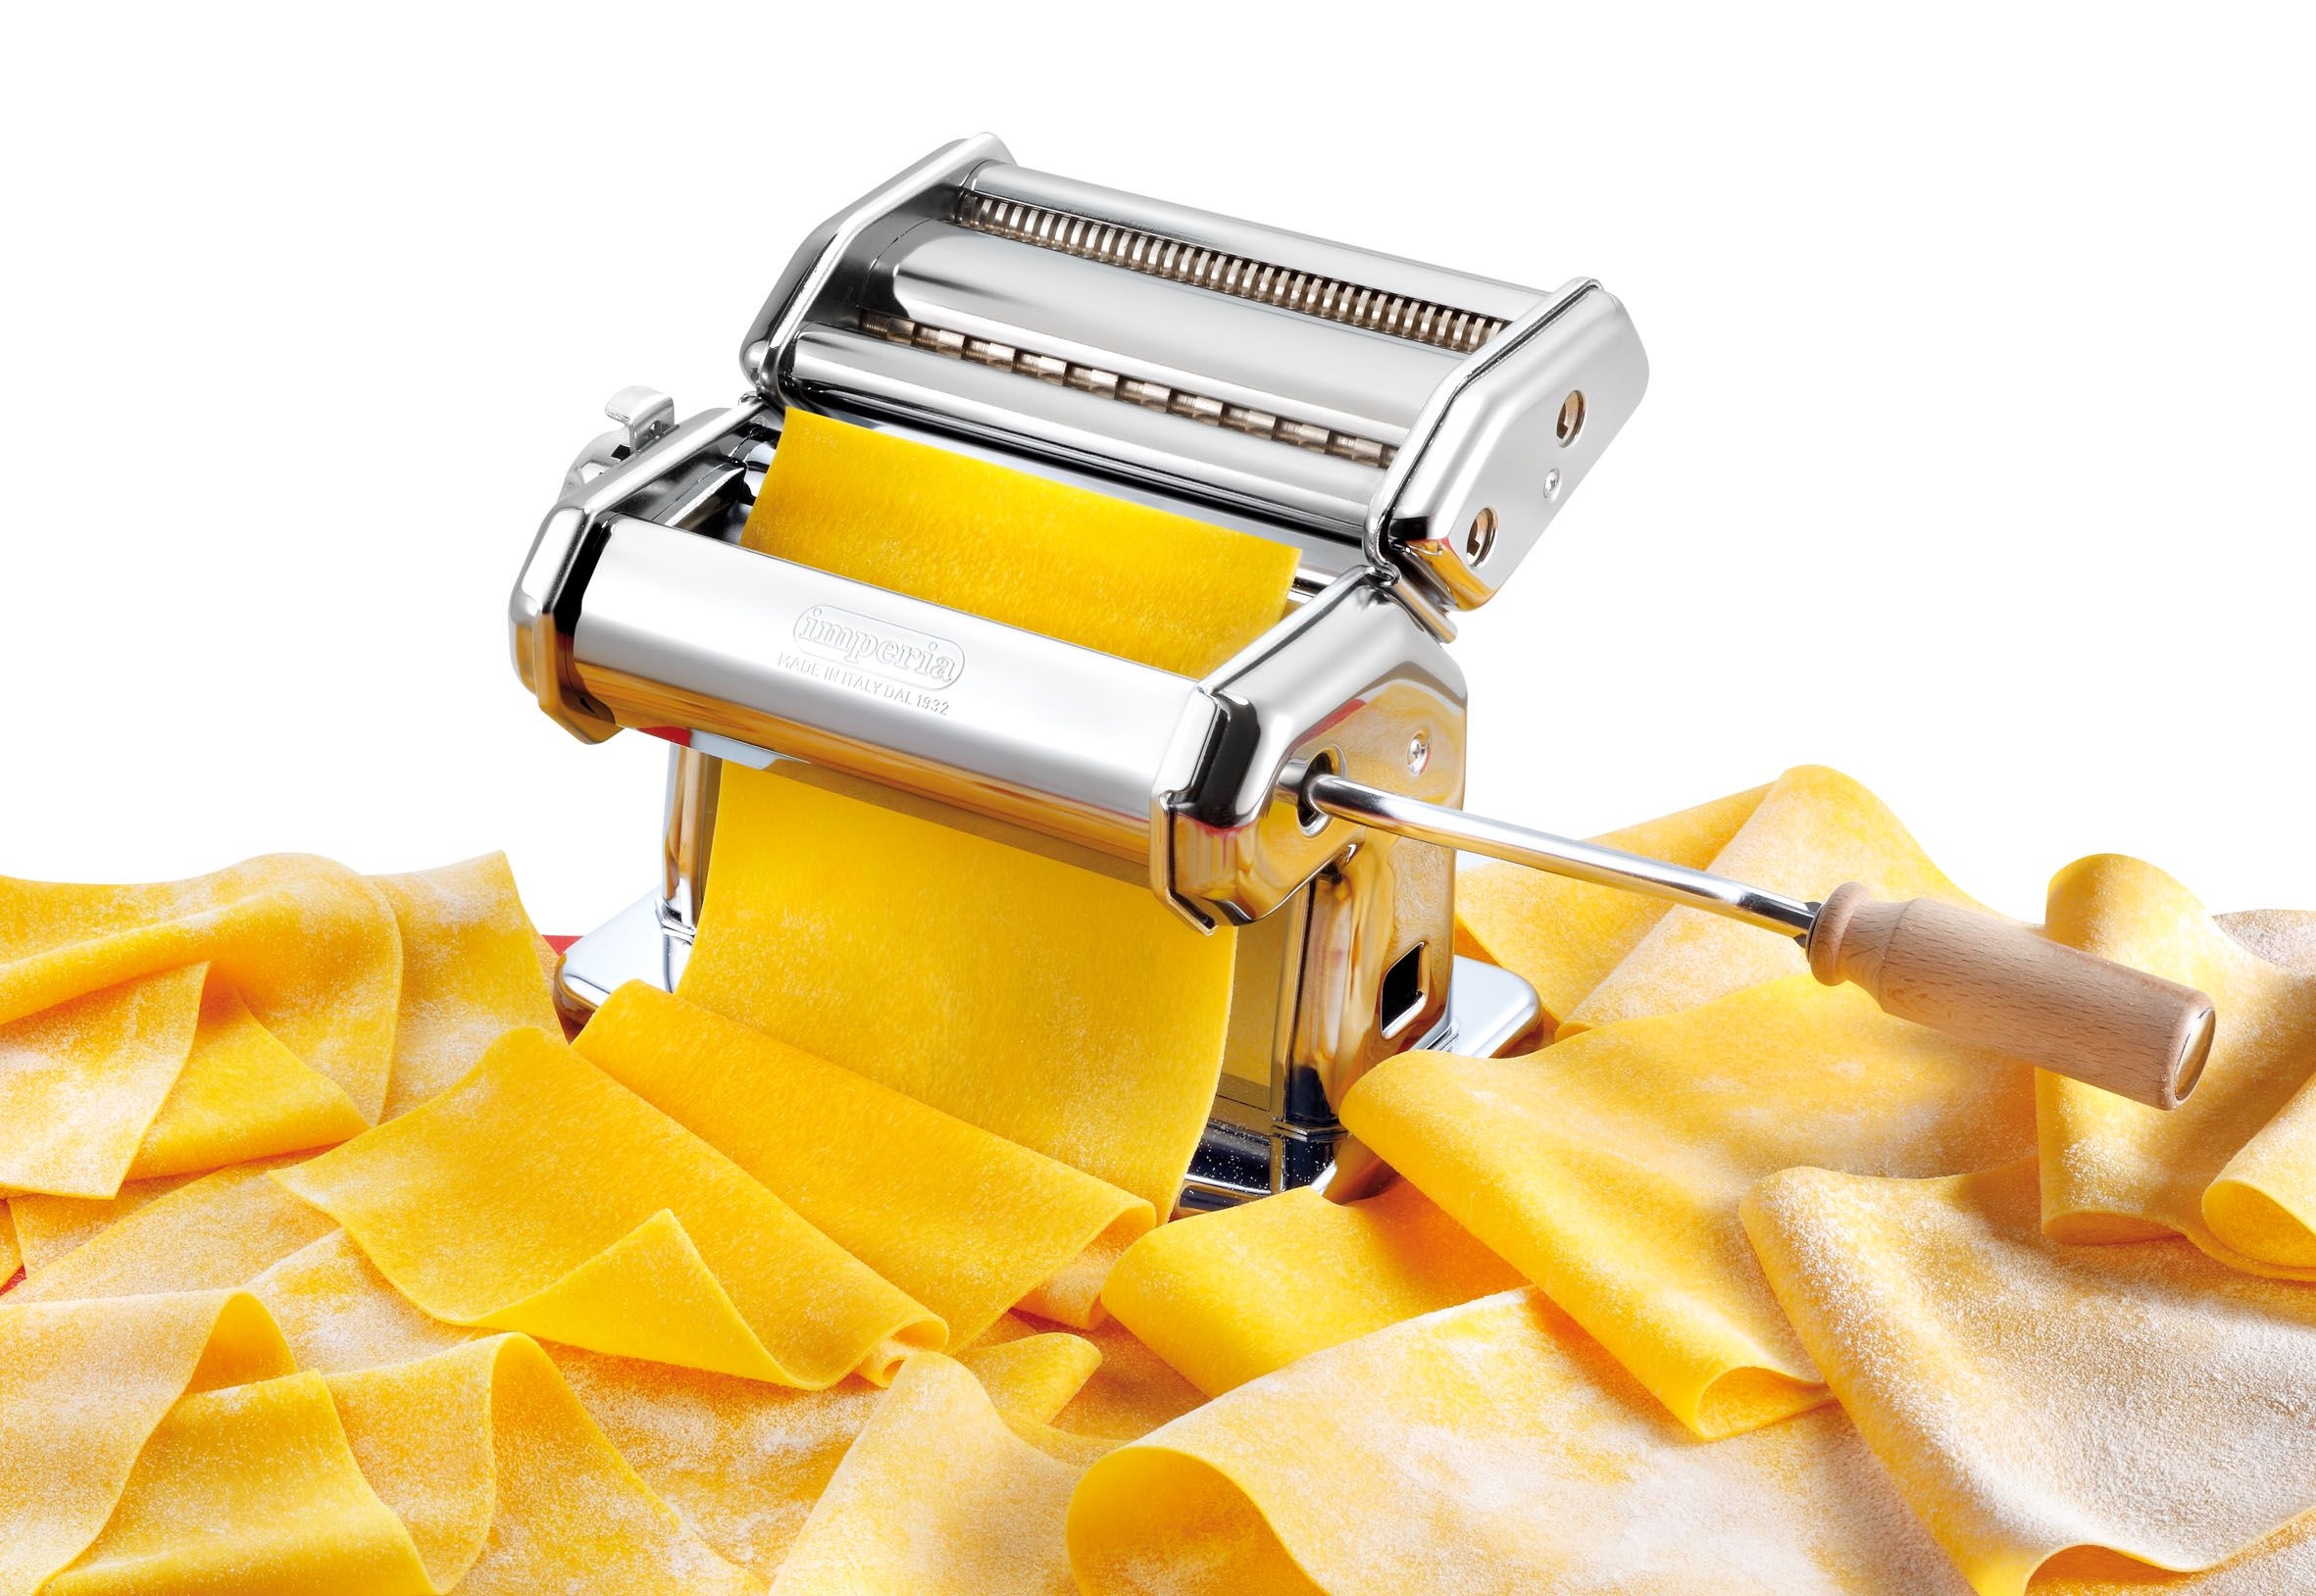 Cucina Pro Imperia Pasta Machine Round Spaghetti Attachment 